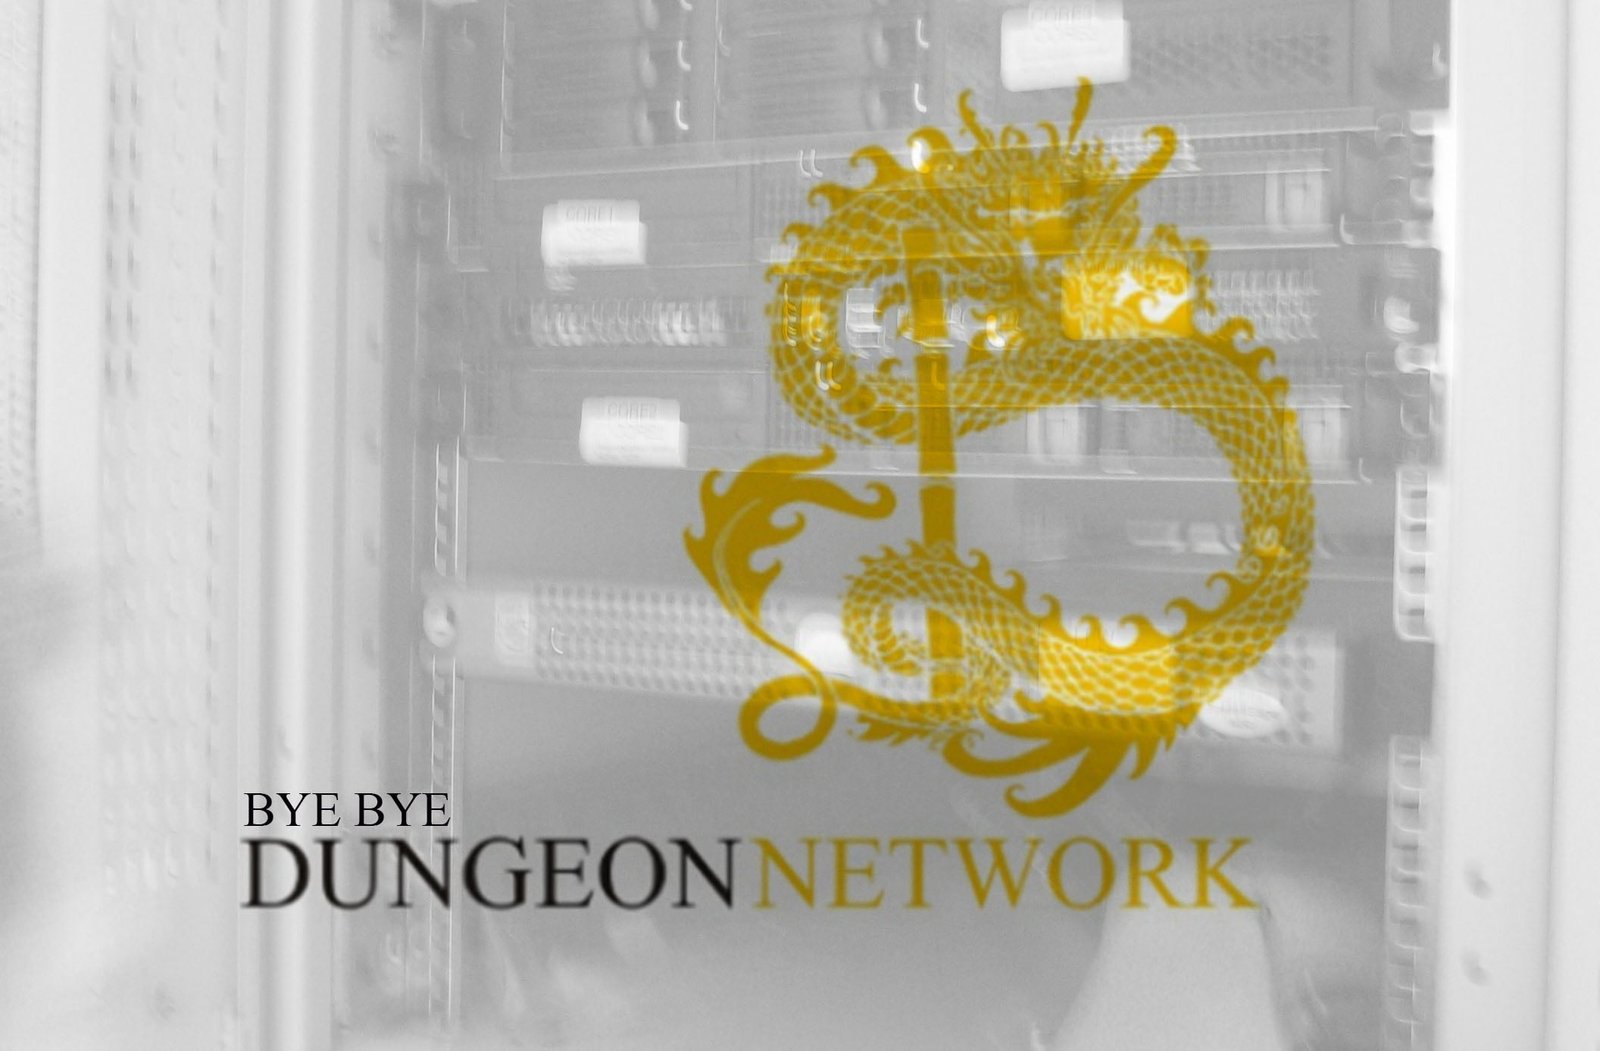 goodbye - dungeon network - seban vor dem server rack mit logo von won